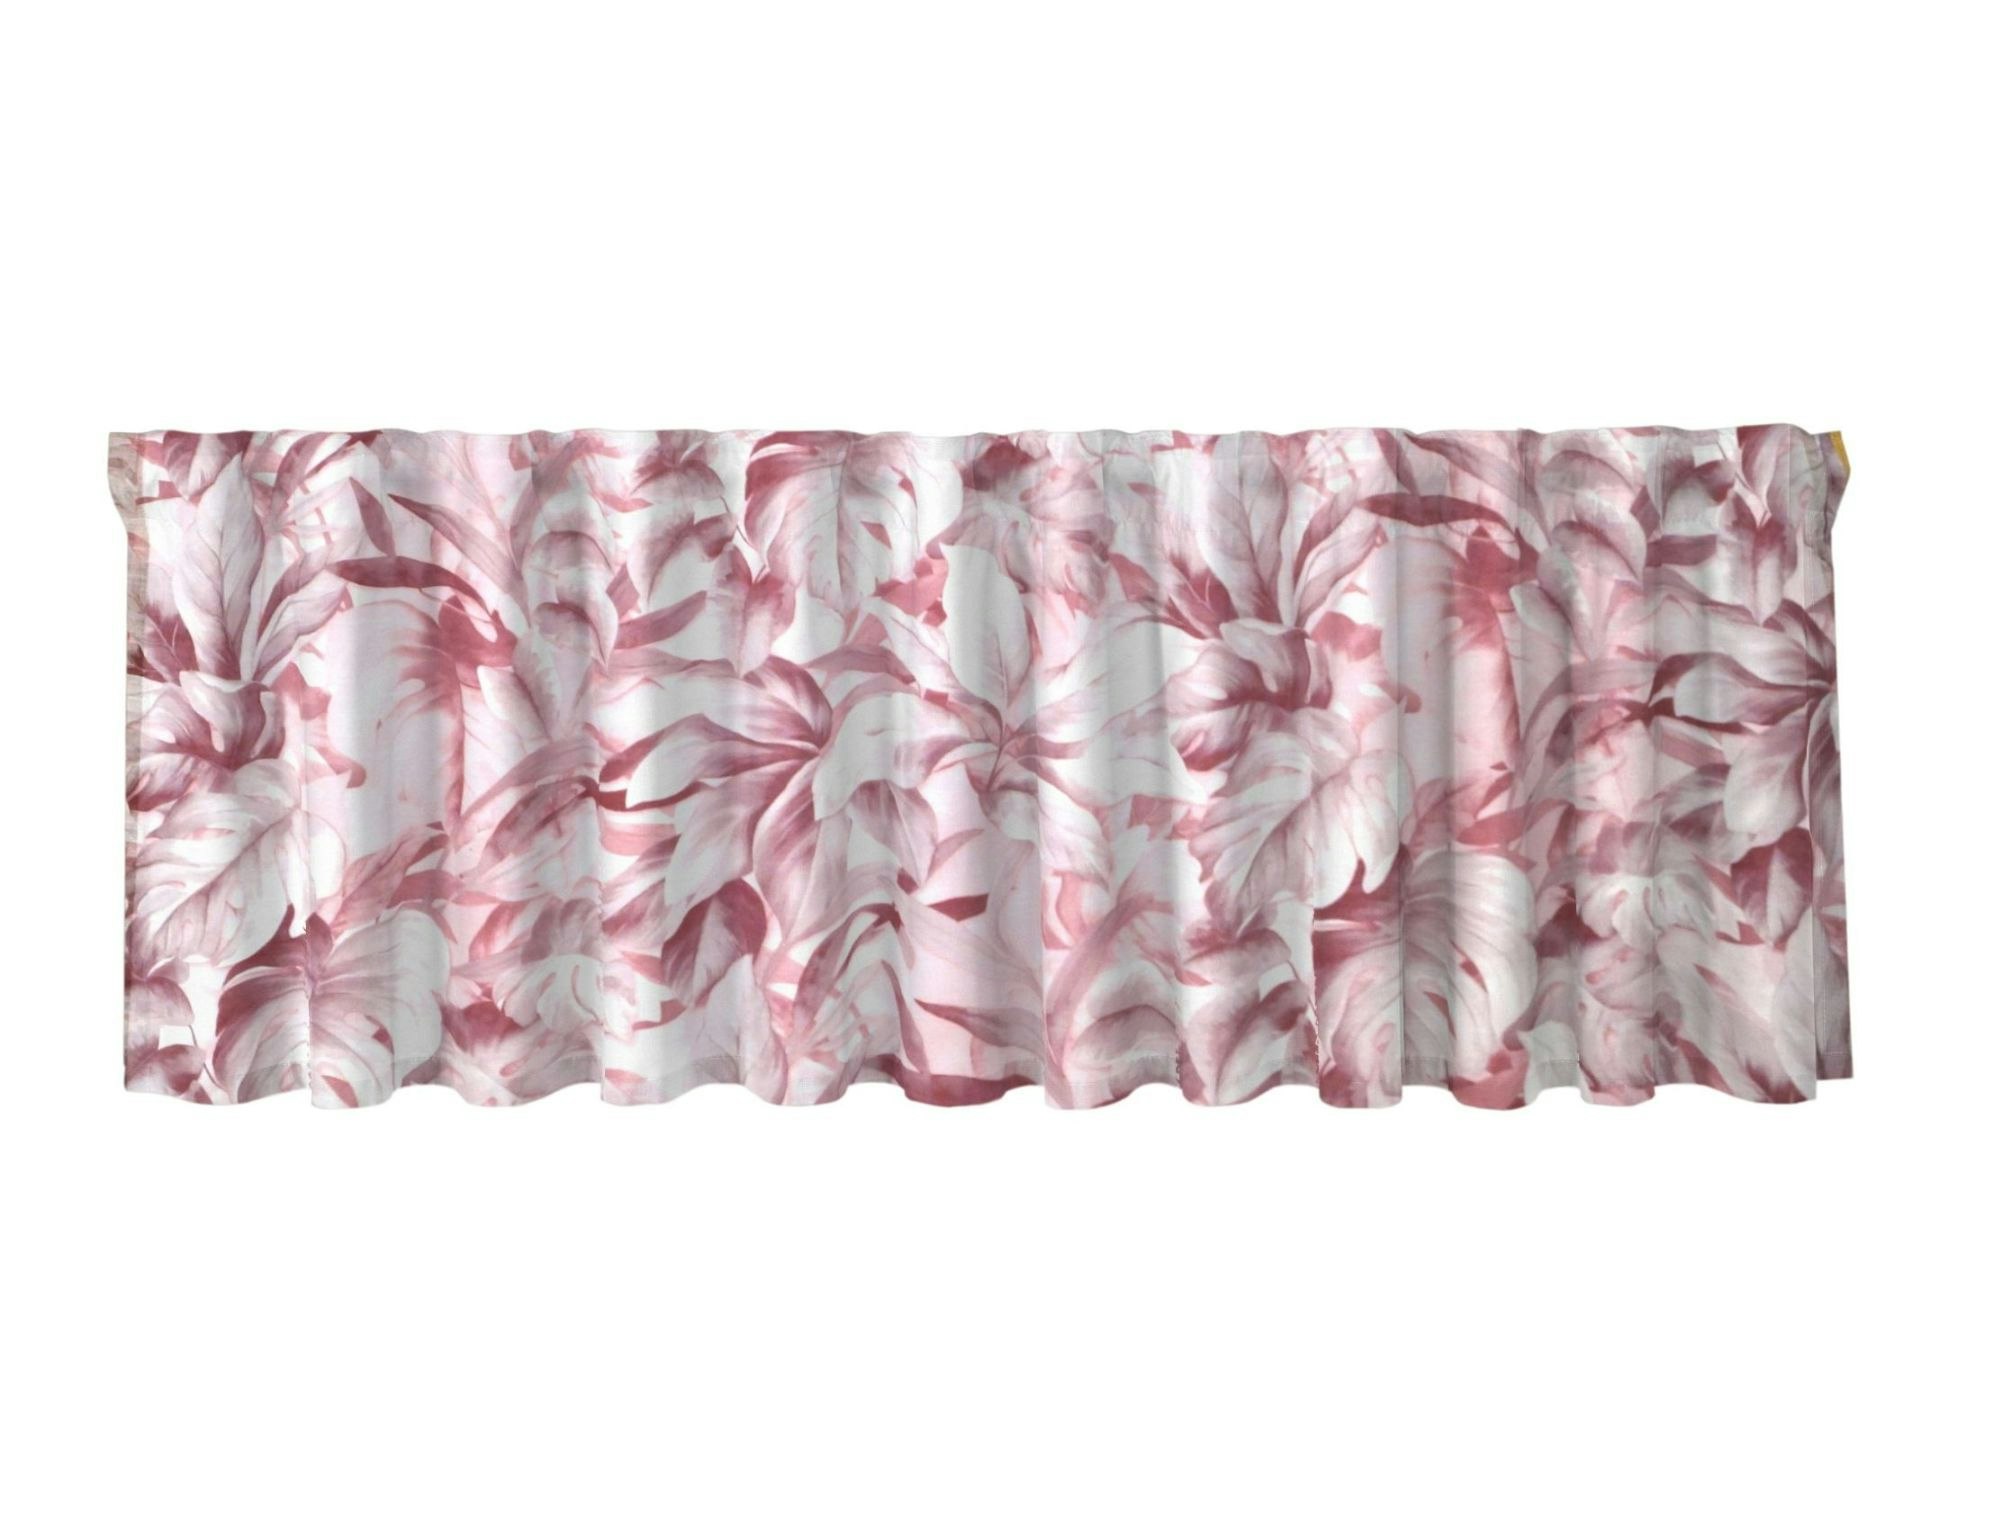 Brazil en tunn rosa och vit färdigsydd gardinkappa med multiband från Redlunds textil, mått 250 x 50 cm.